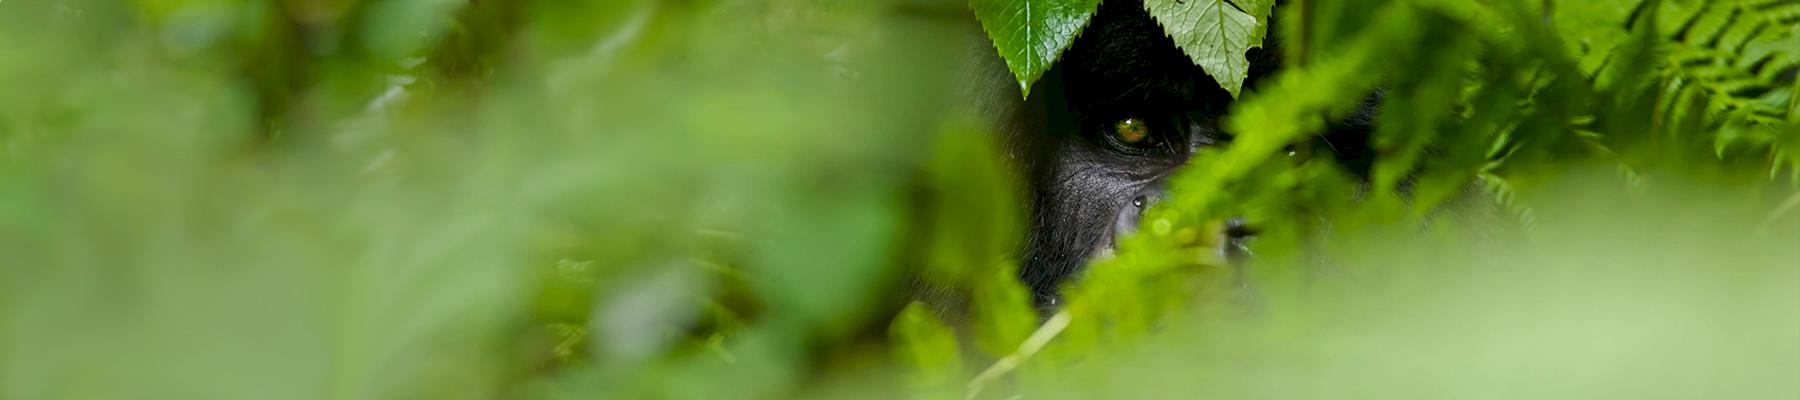 银背山地大猩猩(Gorilla beringei beringei)穿越森林，维龙加山脉© naturepl.com / Andy Rouse / WWF